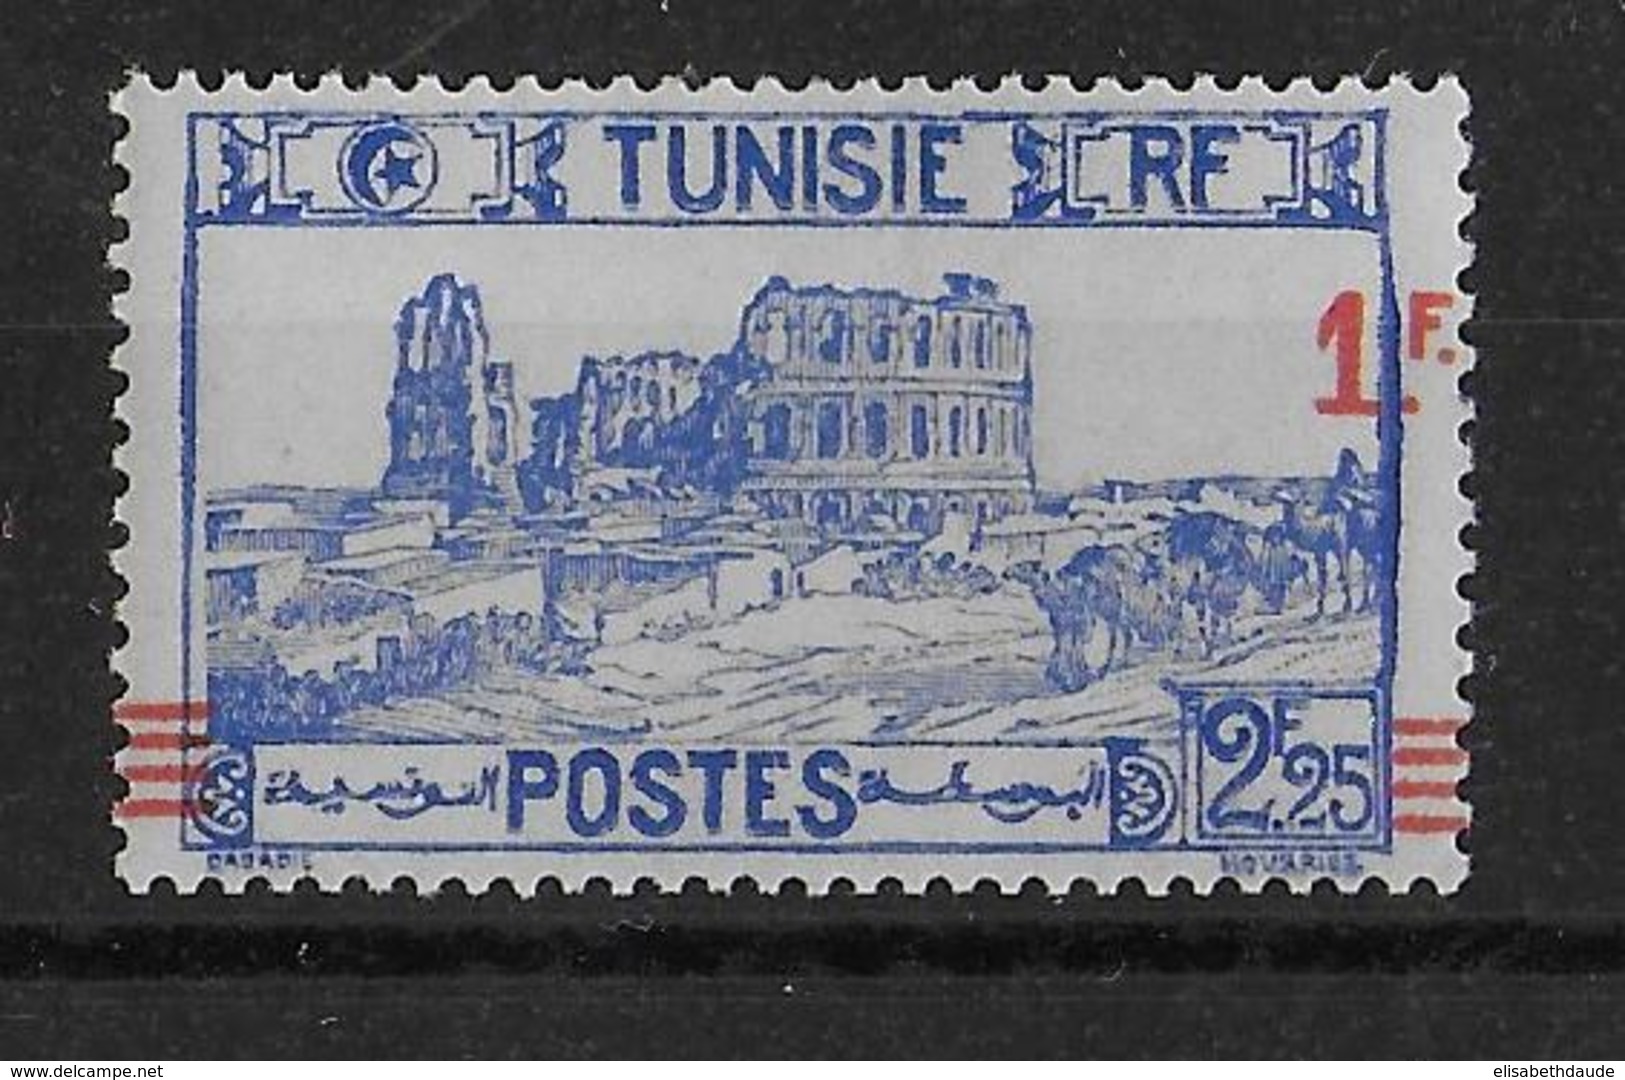 TUNISIE - 1940 - YVERT N° 226 VARIETE SURCHARGE à CHEVAL ** MNH - COTE MAURY = 55 EUR. - Ungebraucht